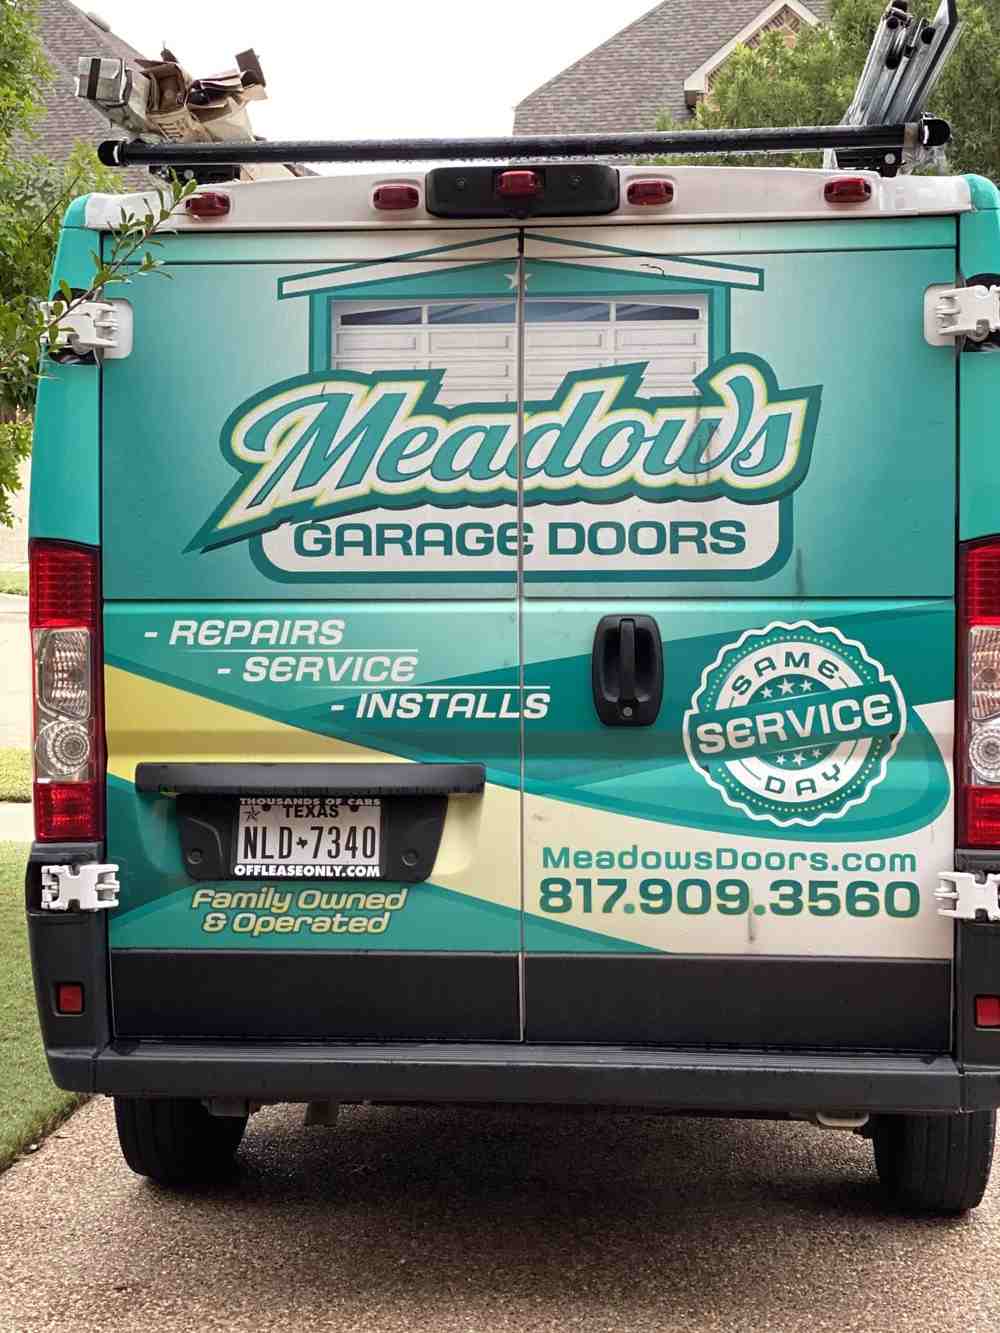 Meadows Garage Door Truck